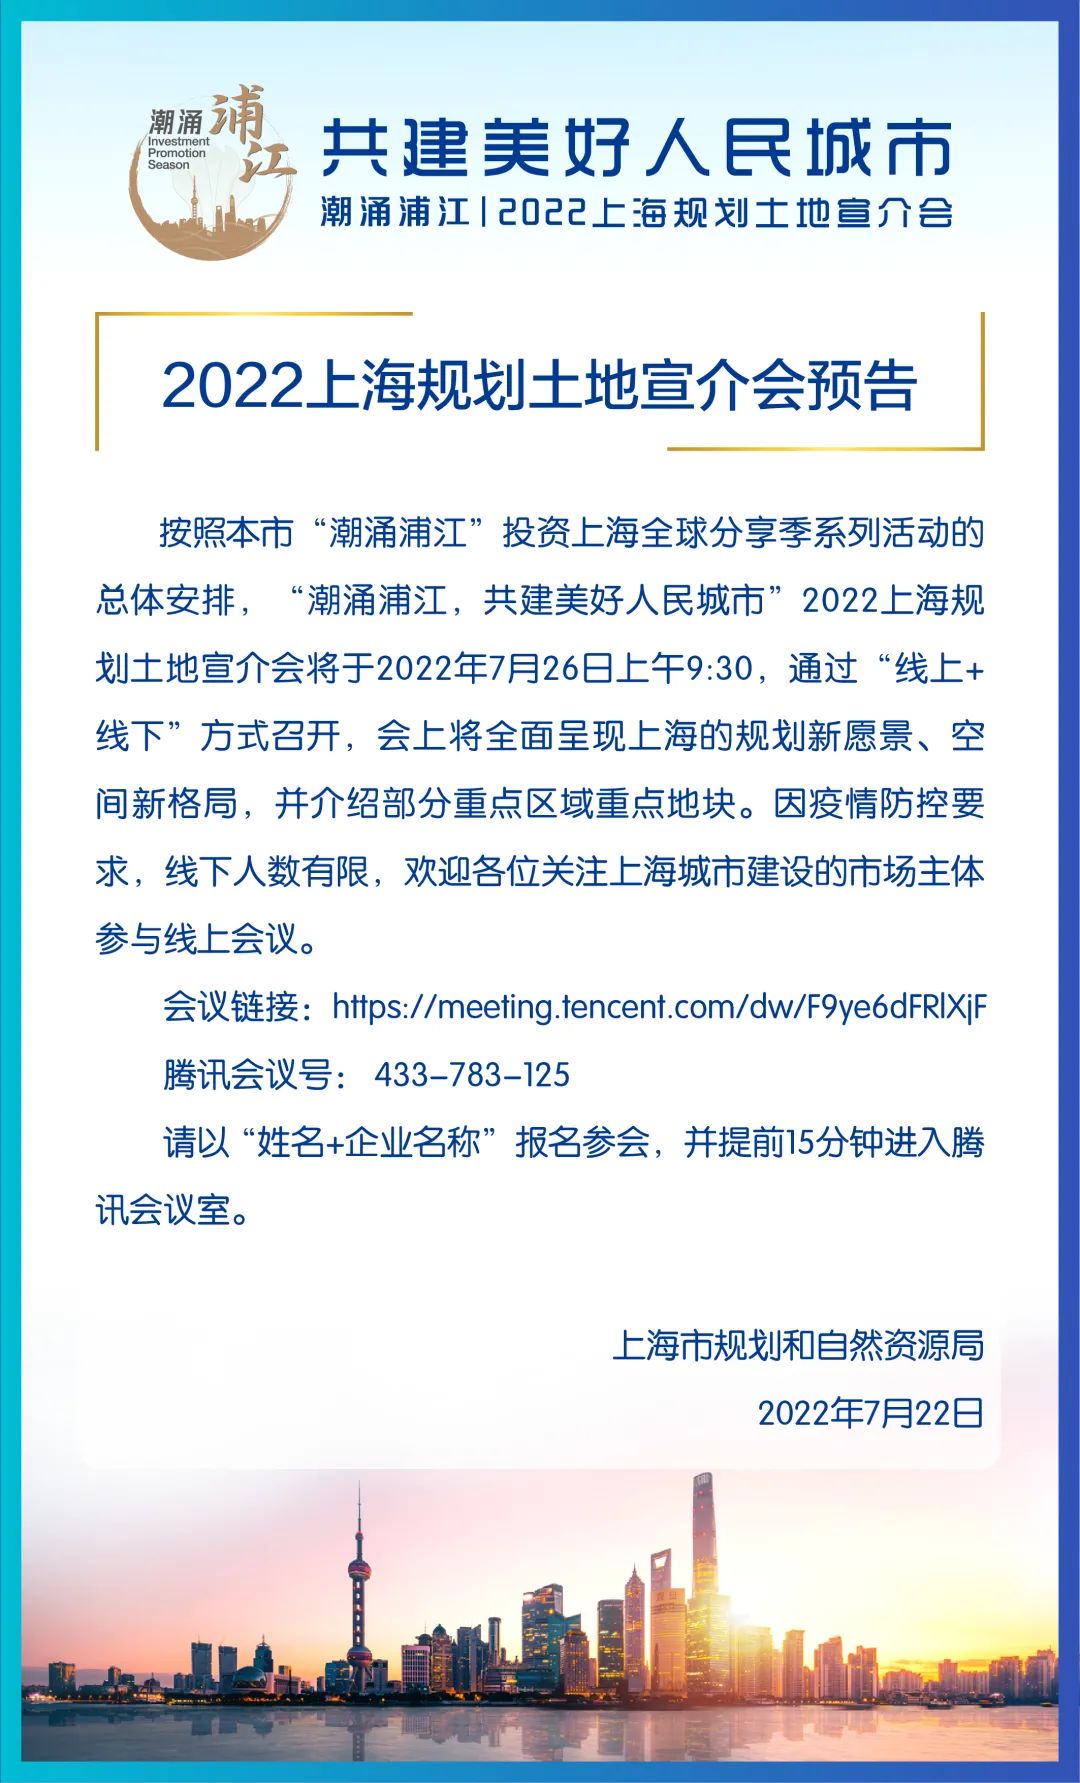 07222022上海规划土地宣介会预告.jpg